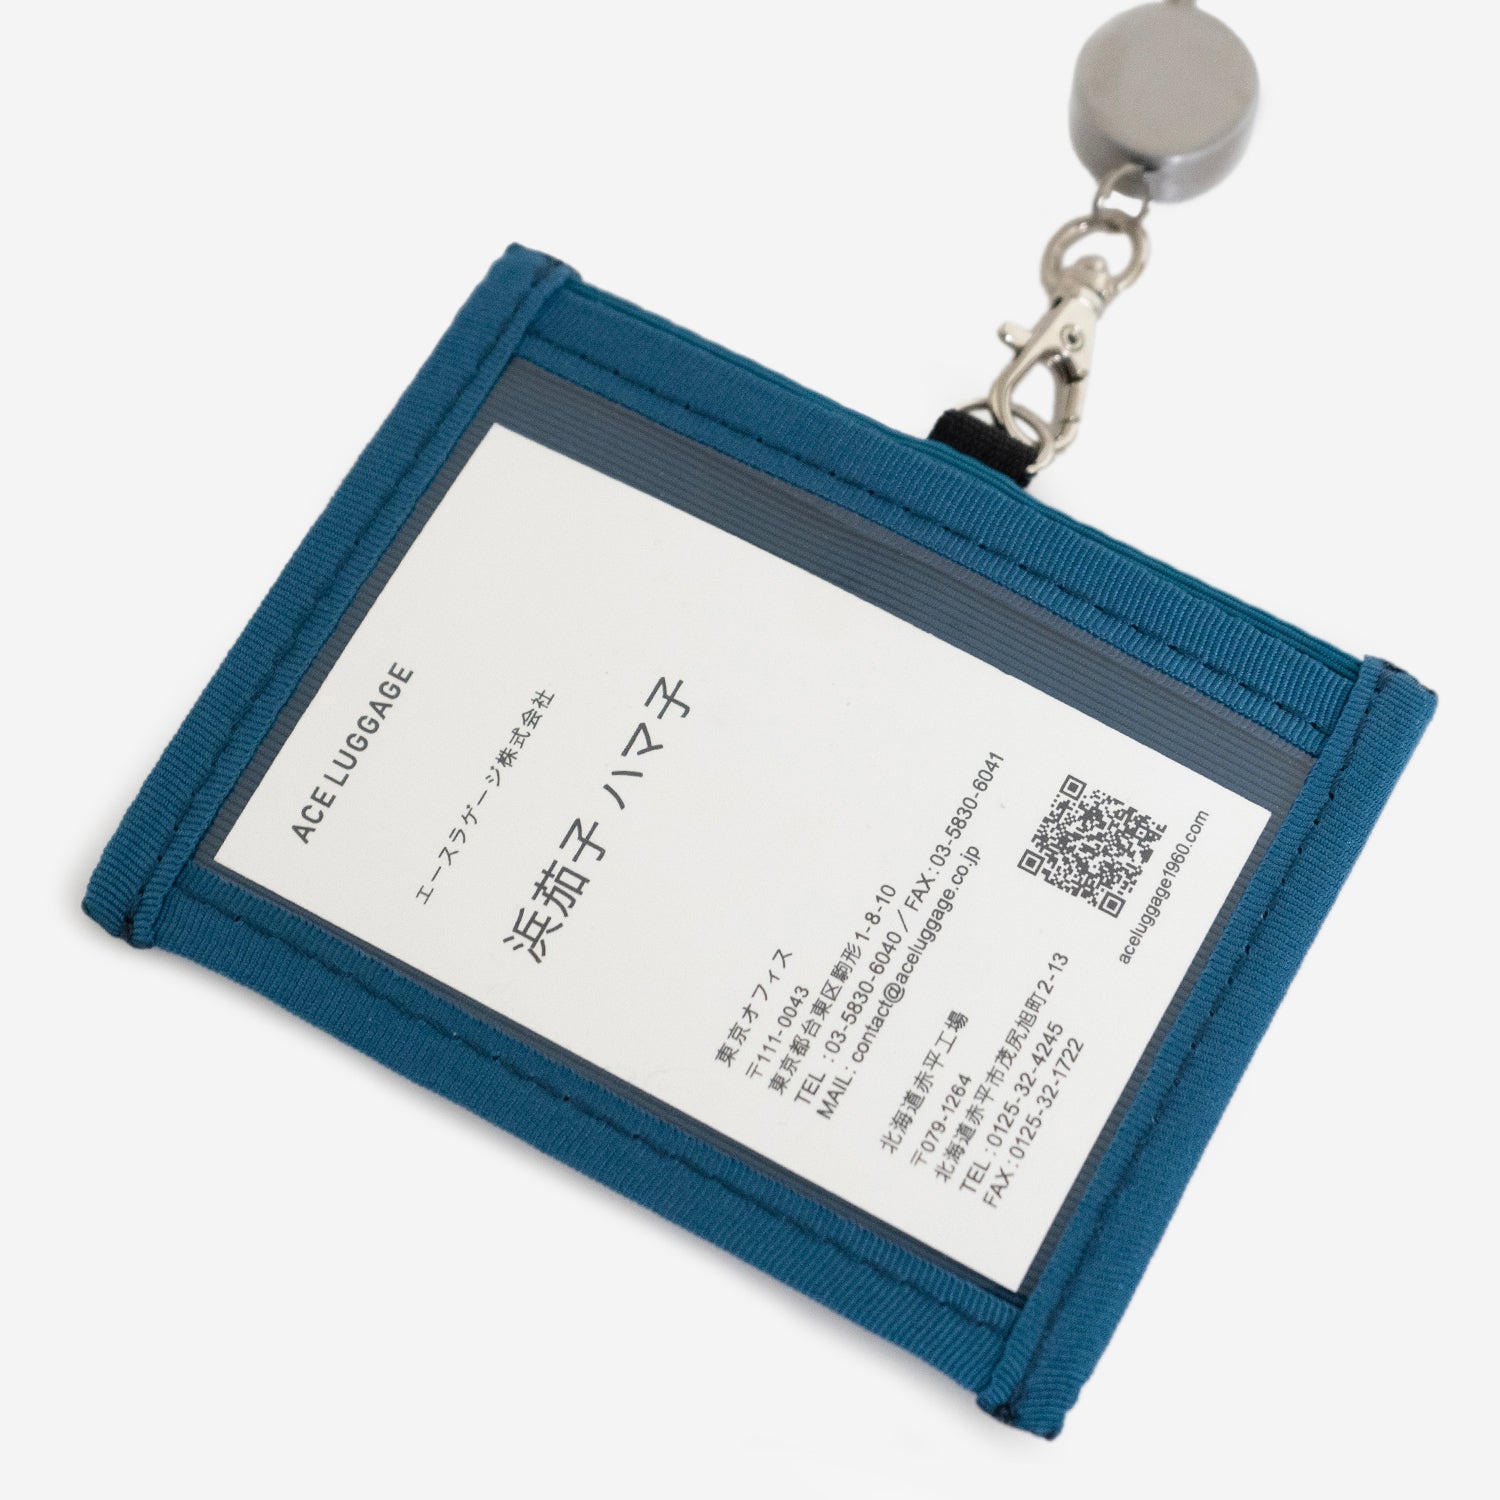 N700A東海道新幹線モケットパスケースの正面クリアポケットには、ICカードや社員証、緊急連絡先用紙などを収納できます。